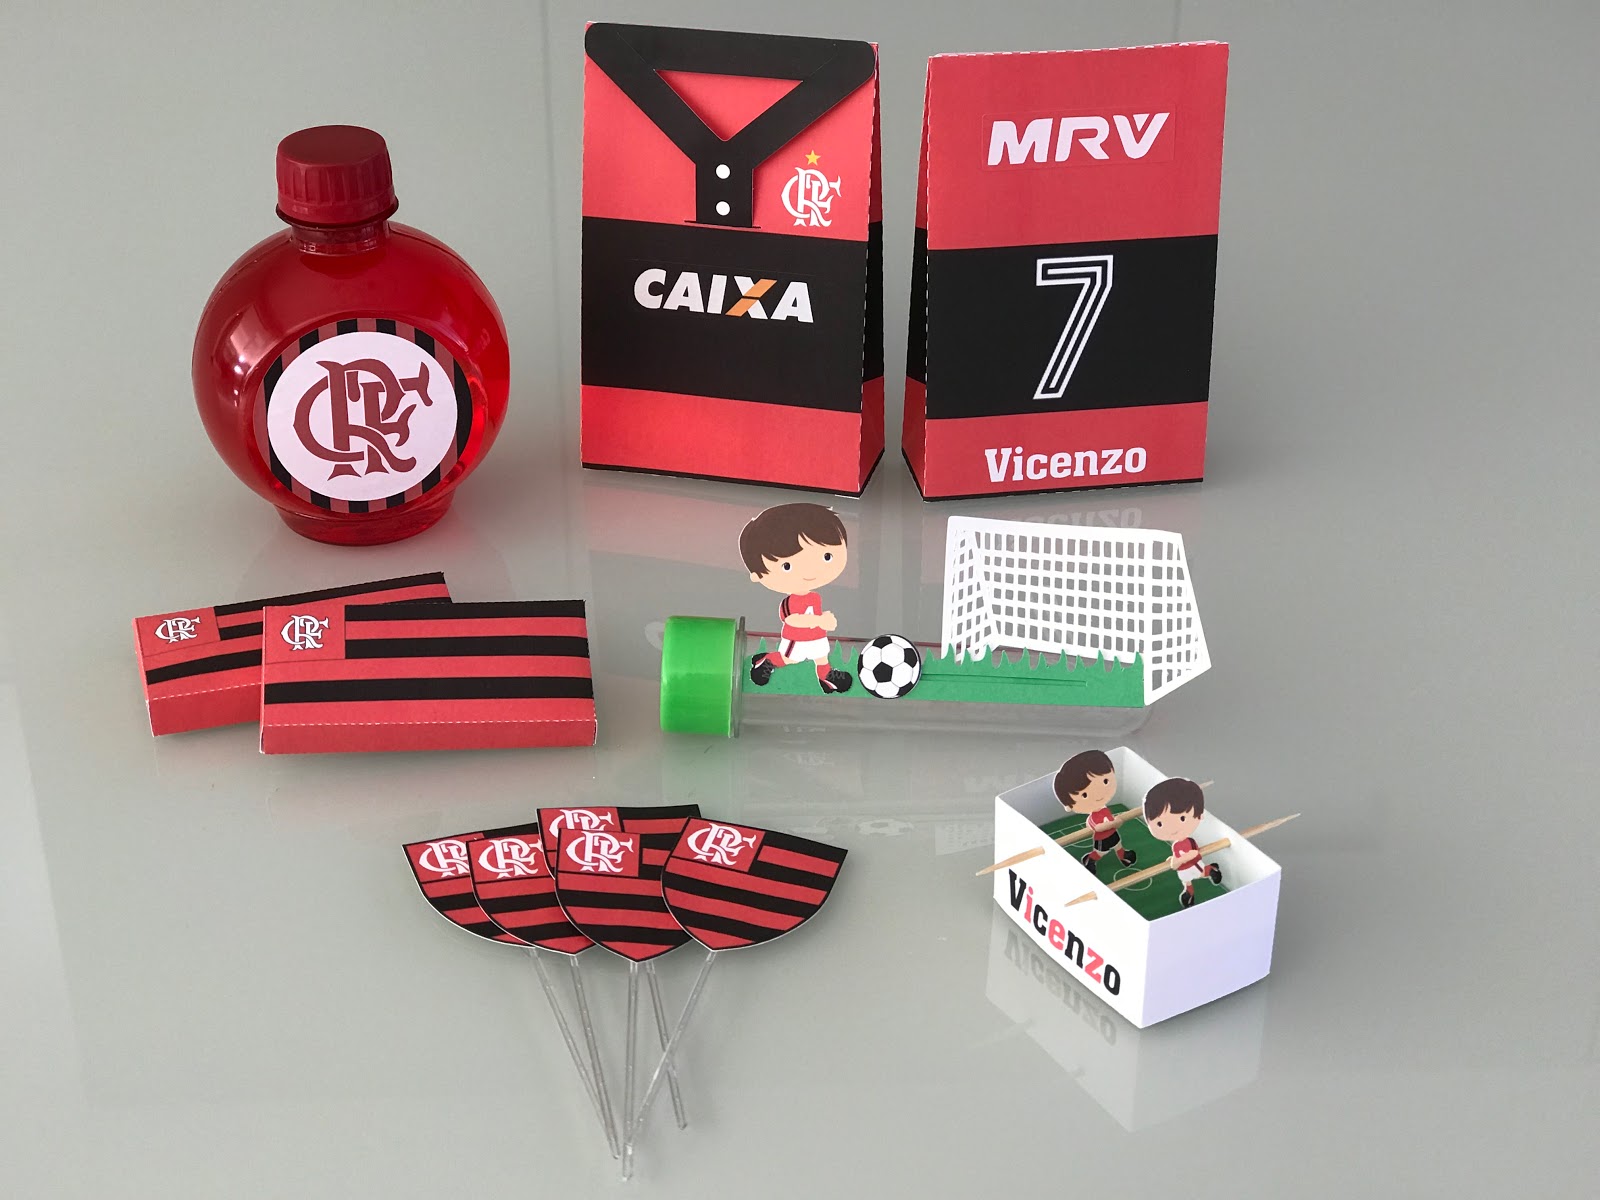 Flamengo - Caixa Lembrancinha Futebol Americano